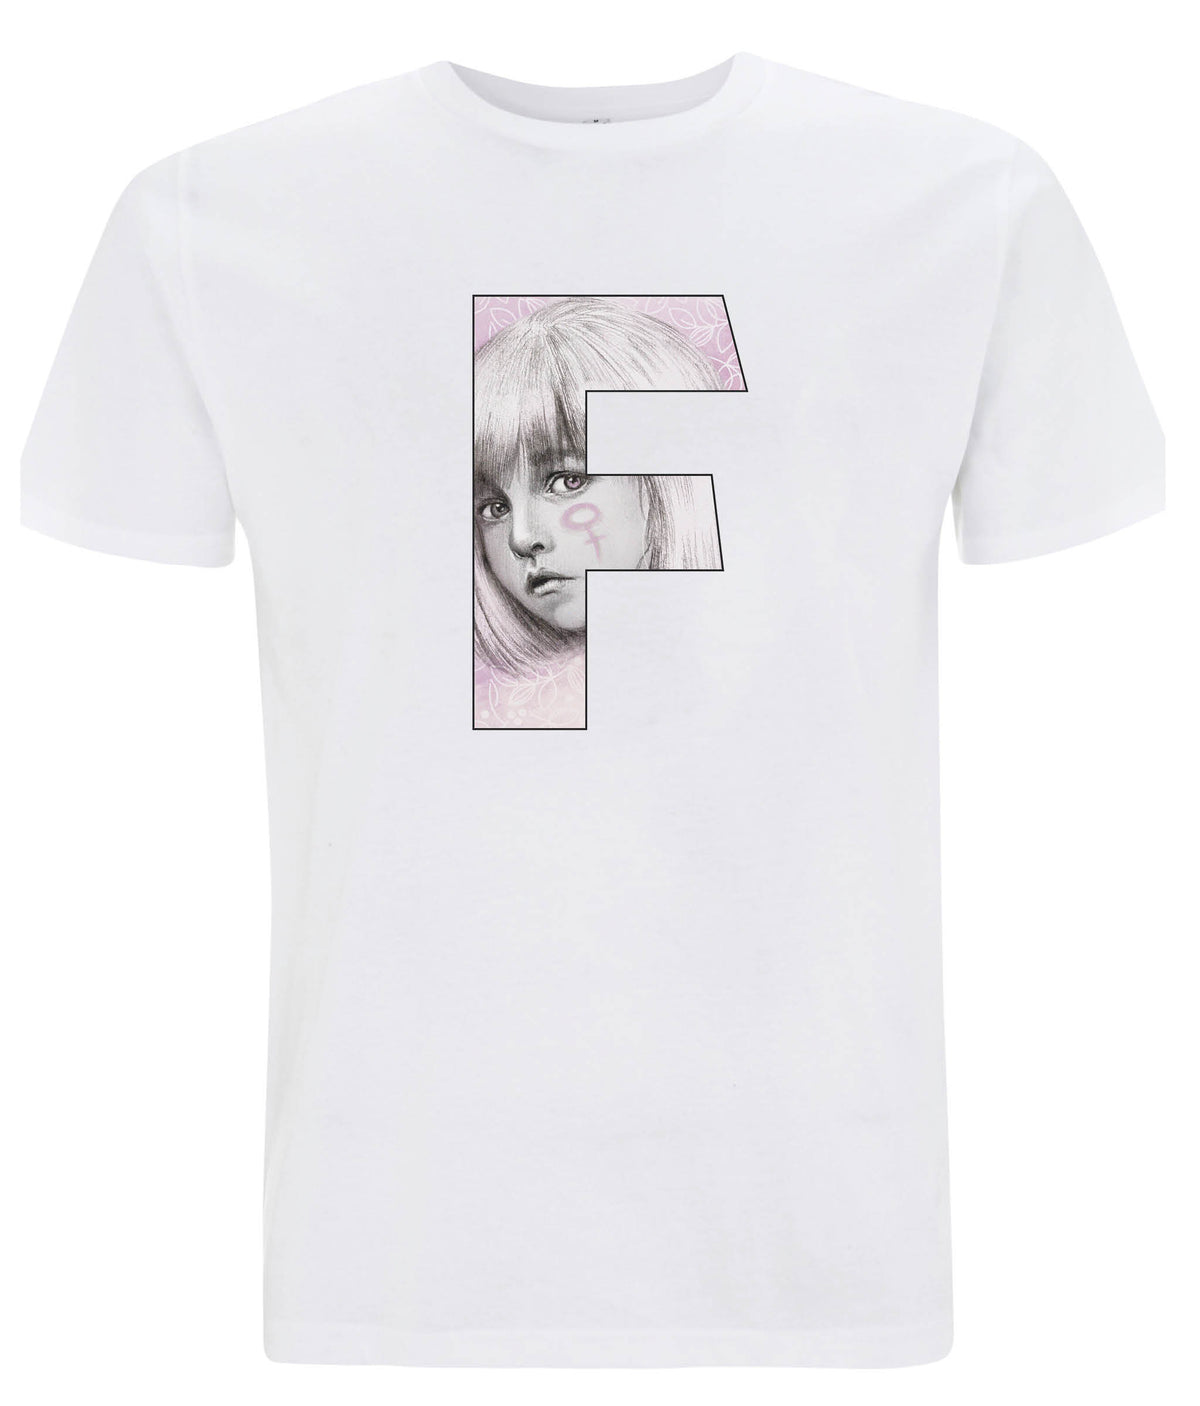 F For Her Organic Feminist T Shirt White